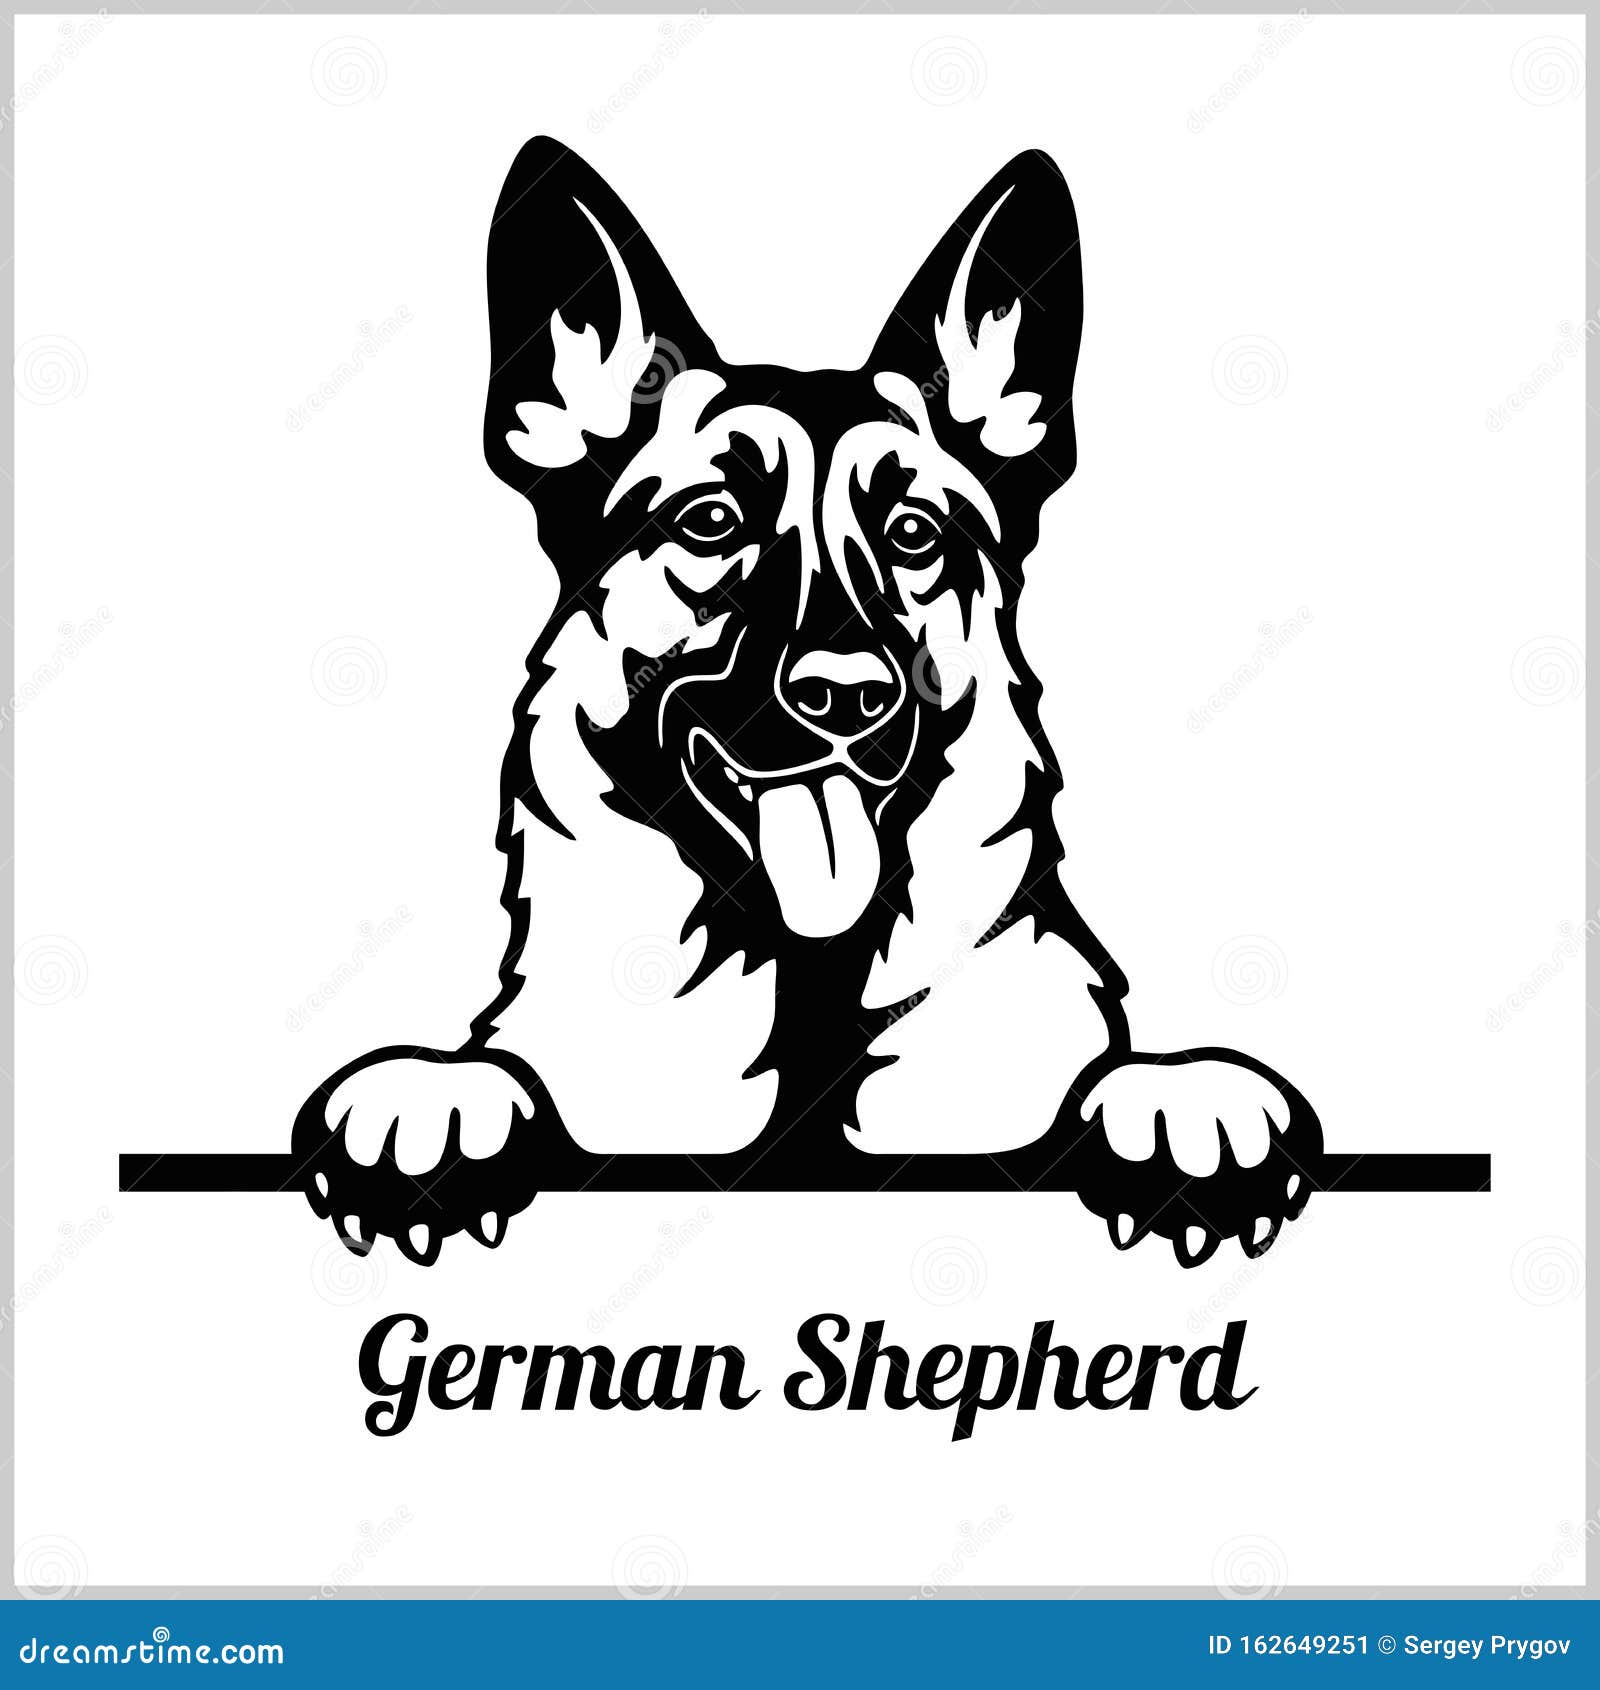 german shepherd - peeking dogs - - breed face head  on white